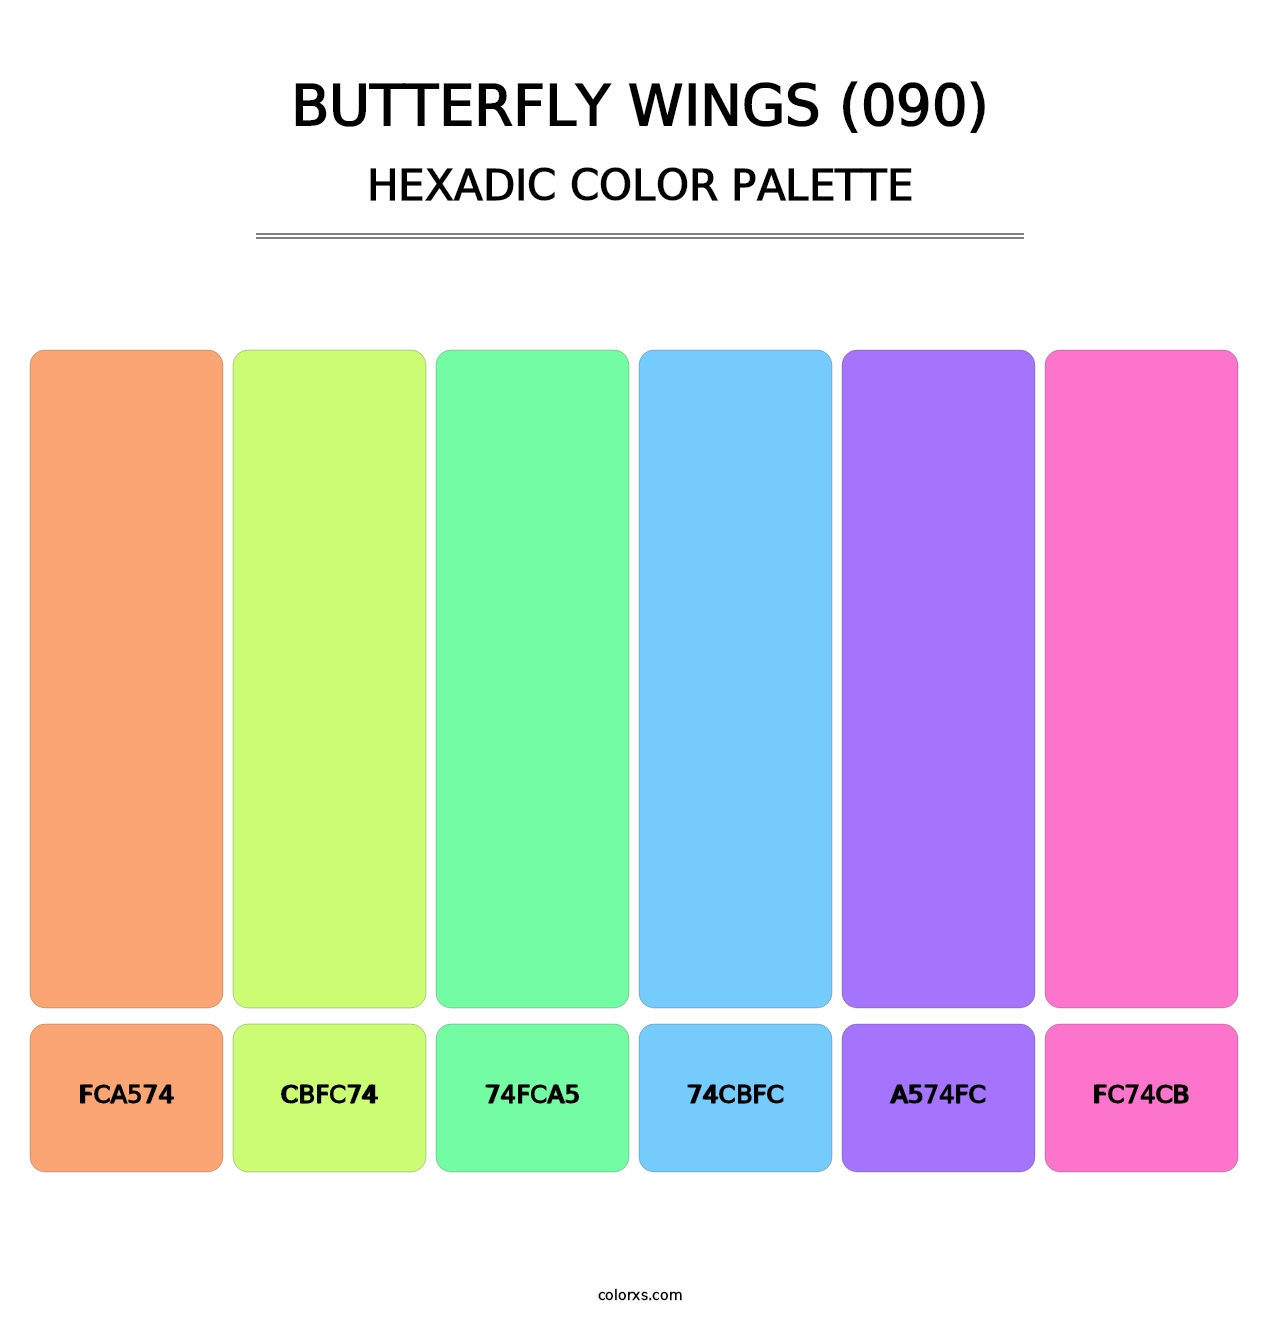 Butterfly Wings (090) - Hexadic Color Palette